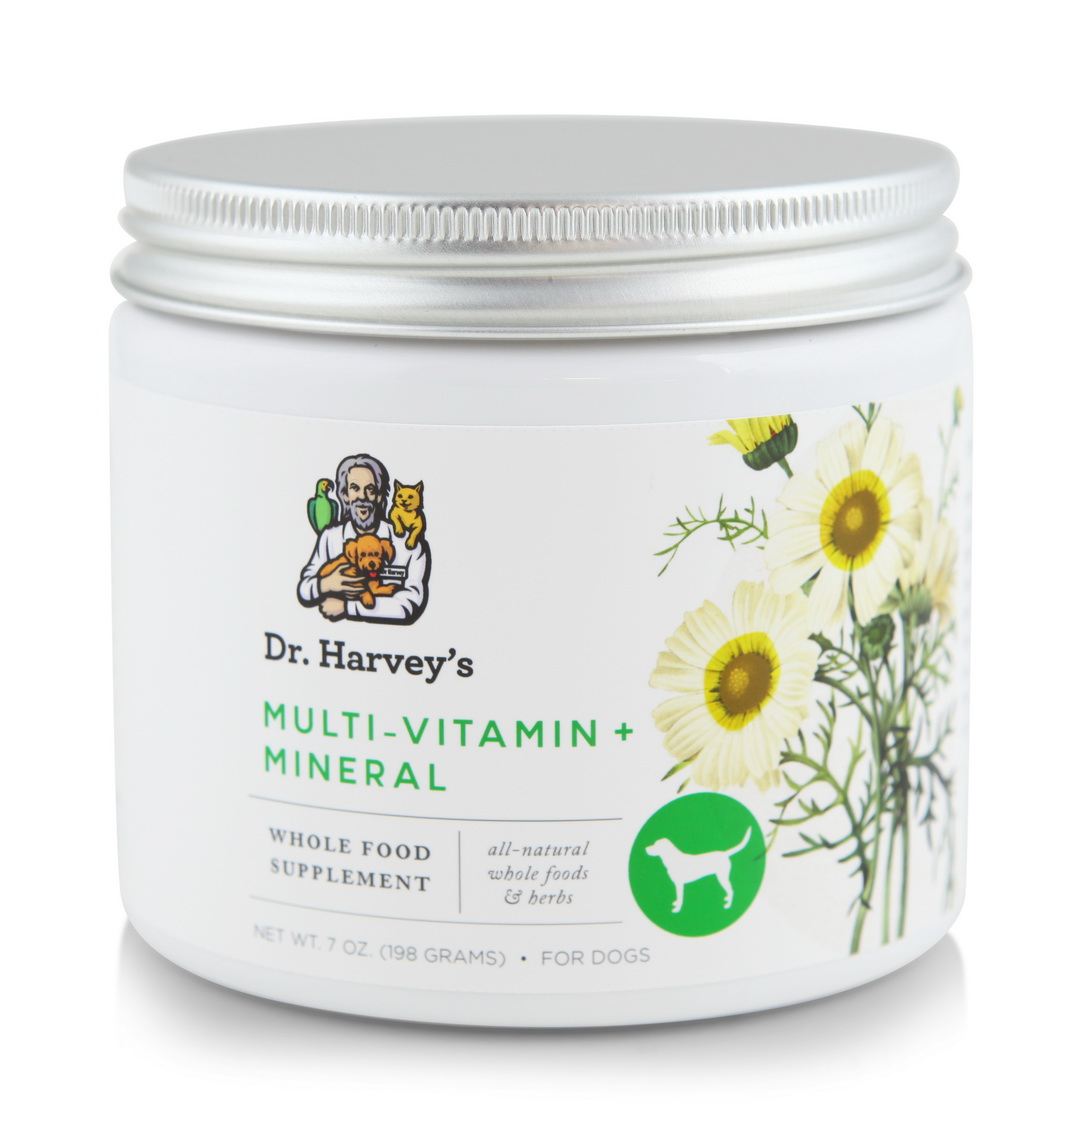 哈維犬用複合維他命營養粉
Multi Vitamin, Mineral, and Herbal Supplement 8 oz. for Dog Distributor